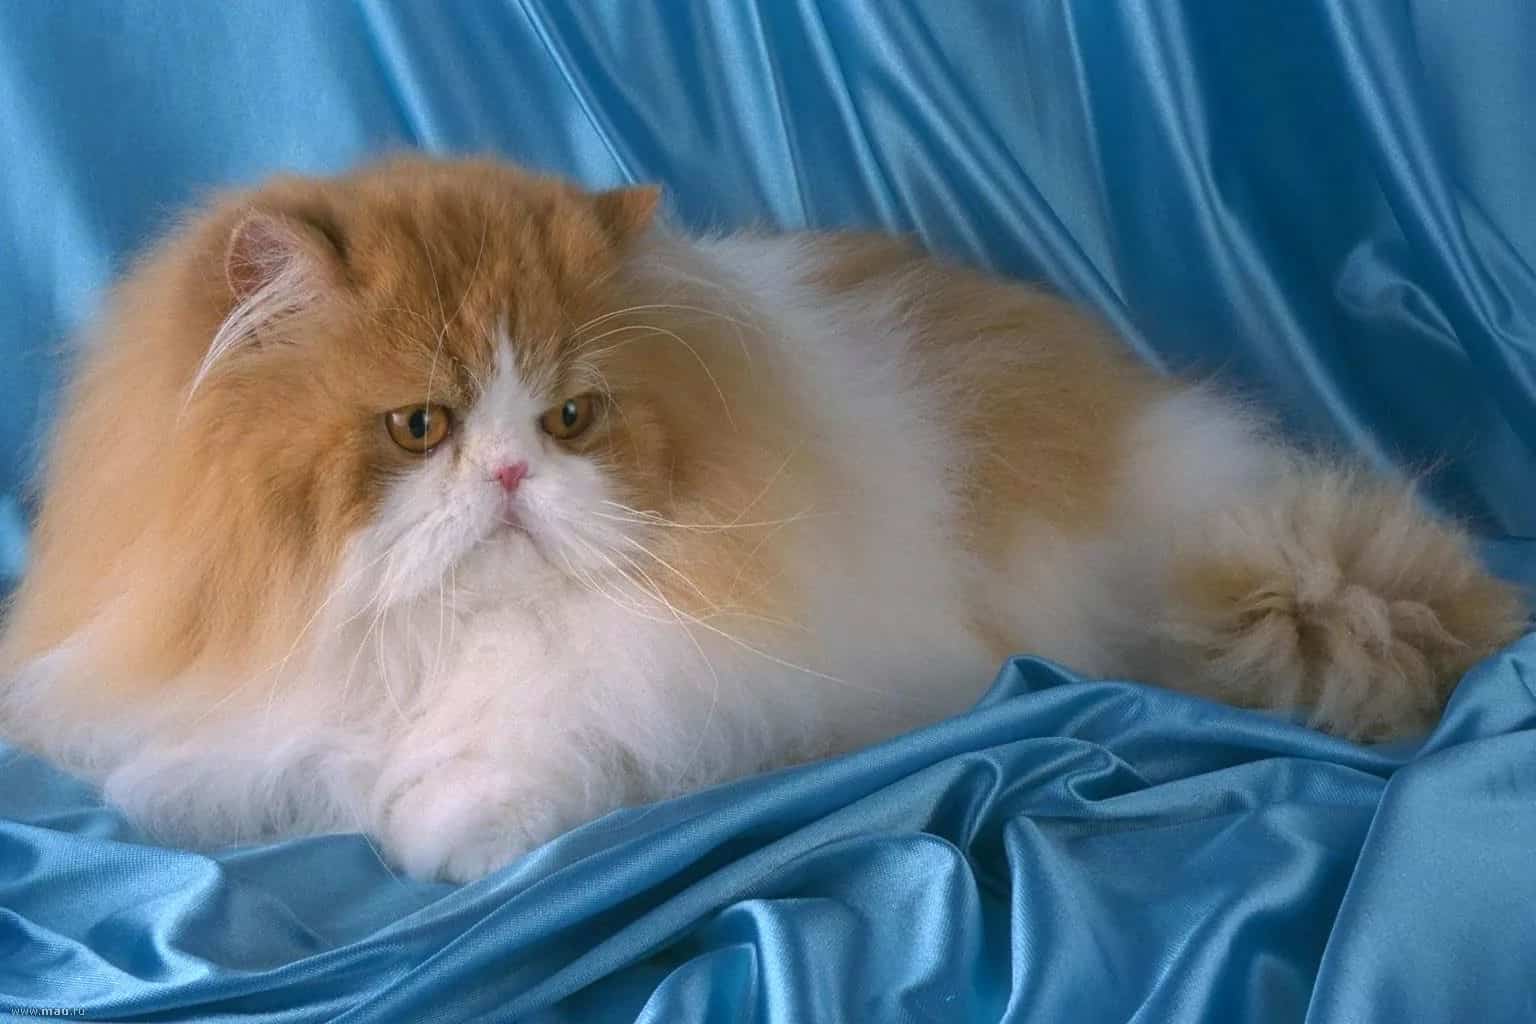 Персидская кошка — узнайте все о породе здесь! фото, описание, характер, цена, отзывы, содержание, окрас, уход за шерстью, все о персидской кошке от а до я